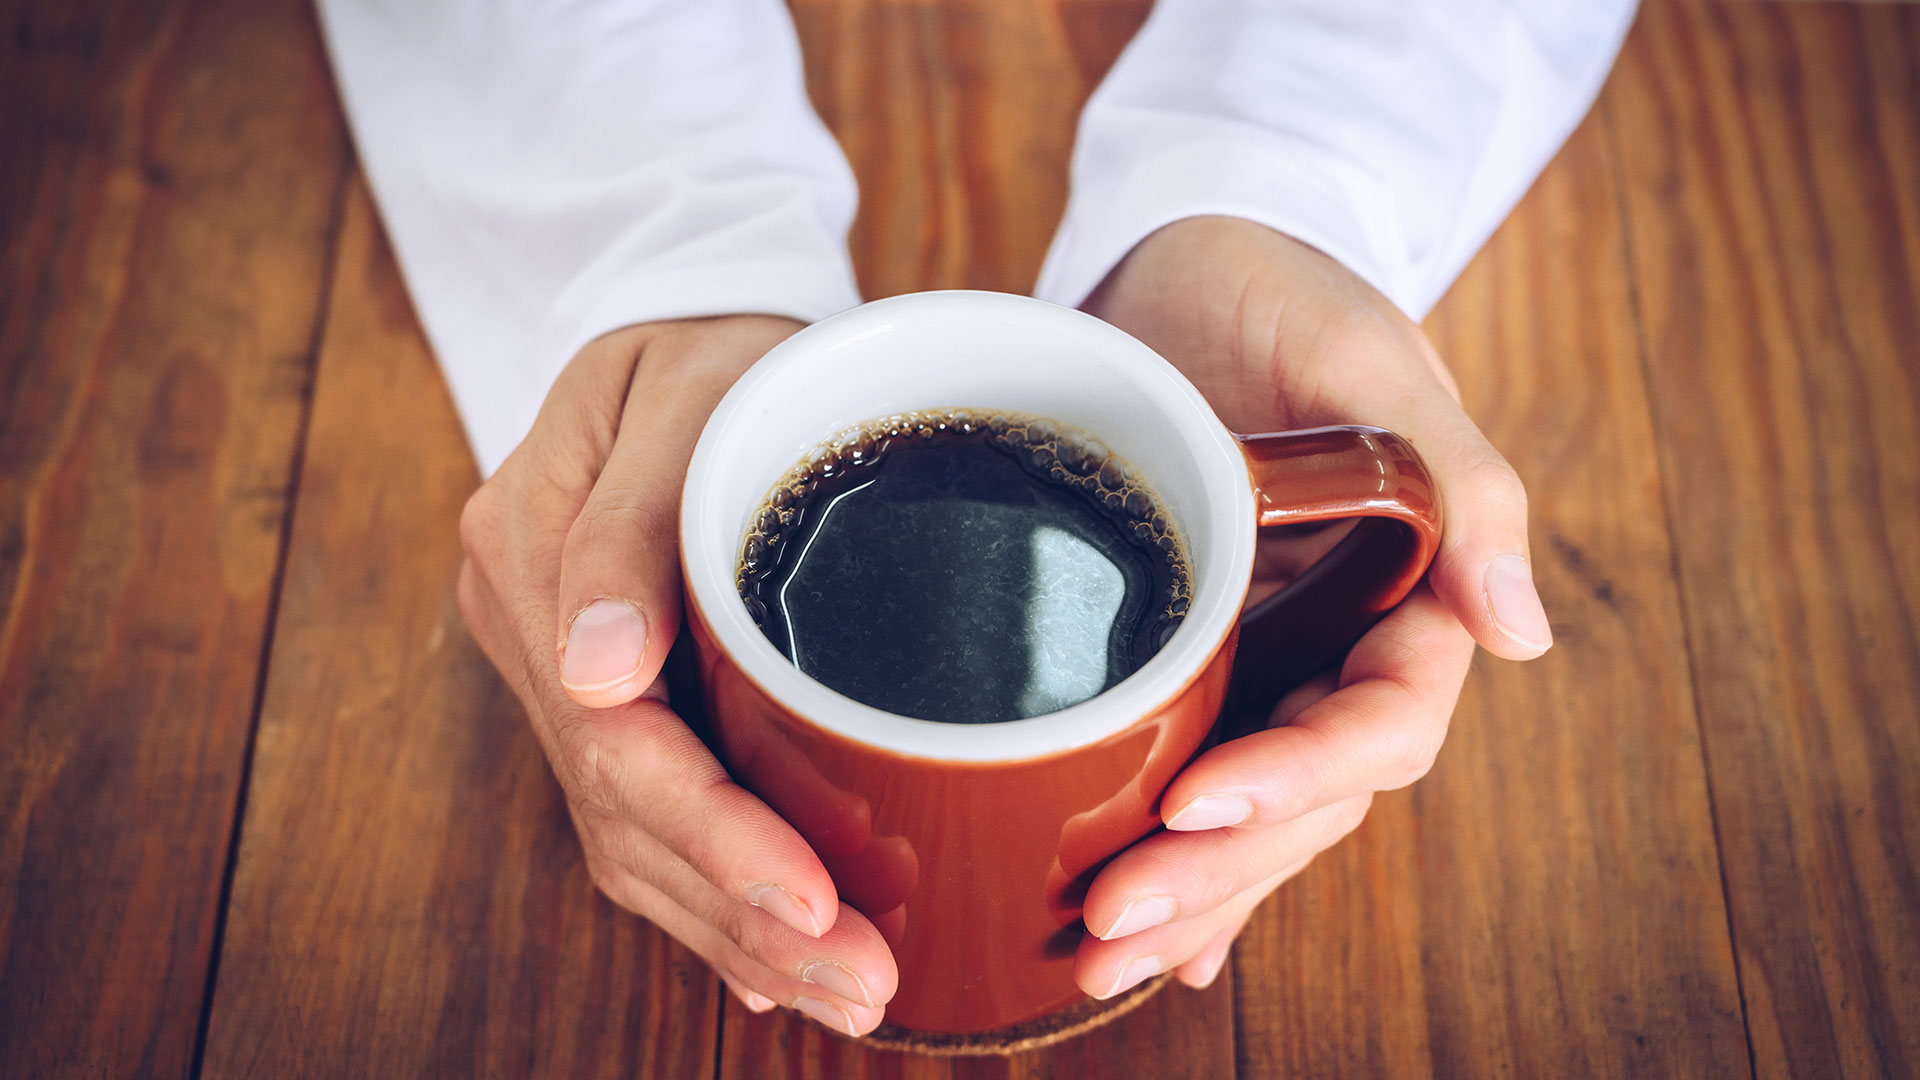 Los investigadores se propusieron evaluar si el consumo materno de cafeína influye en el desarrollo de los niños